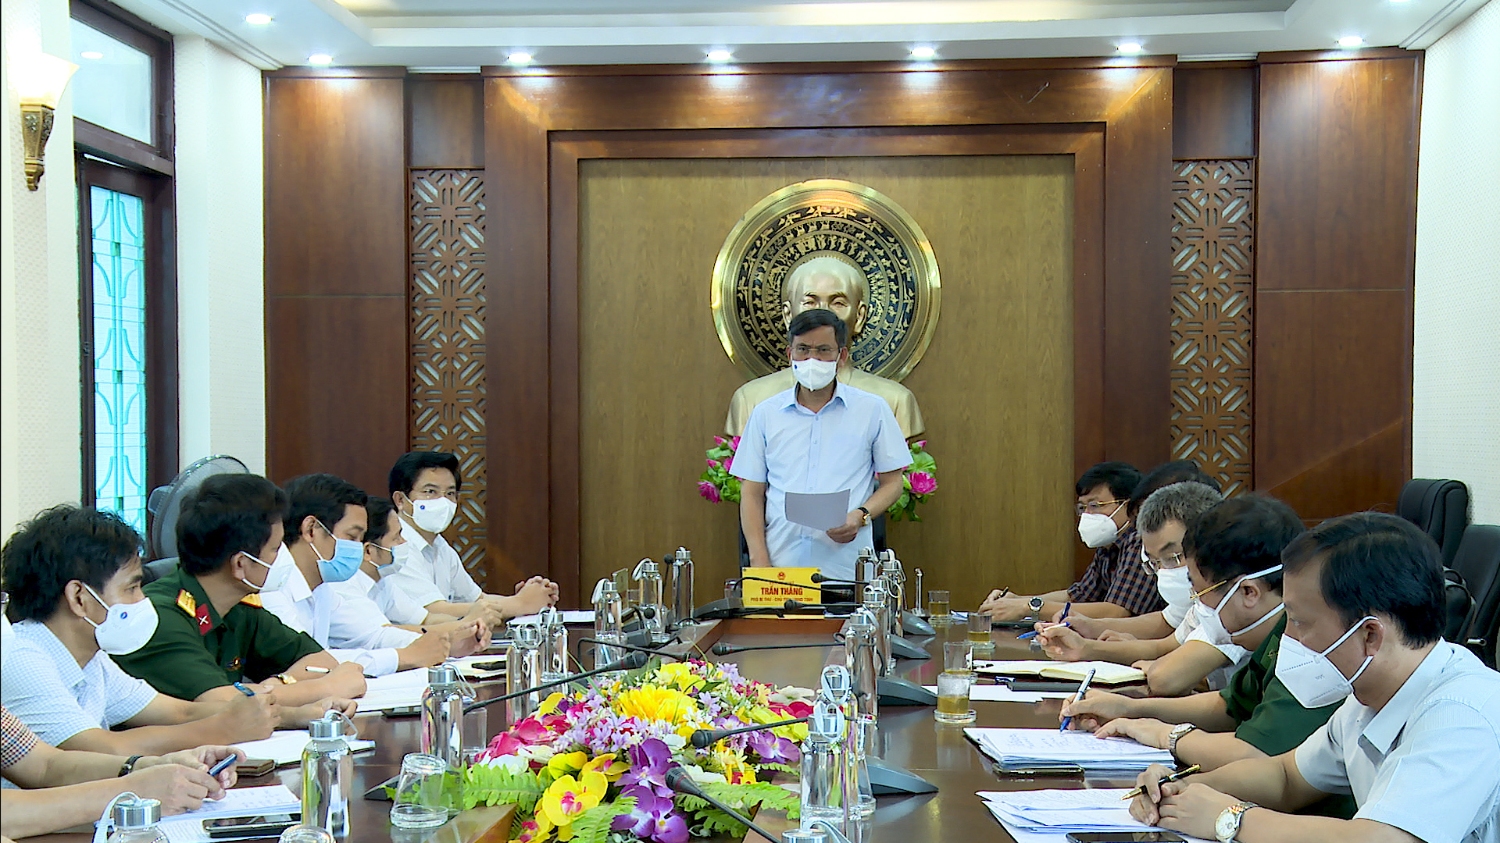 Đồng chí Trần Thắng – Phó Bí thư Tỉnh uỷ, Chủ tịch UBND tỉnh phát biểu chỉ đạo tại buổi làm việc.